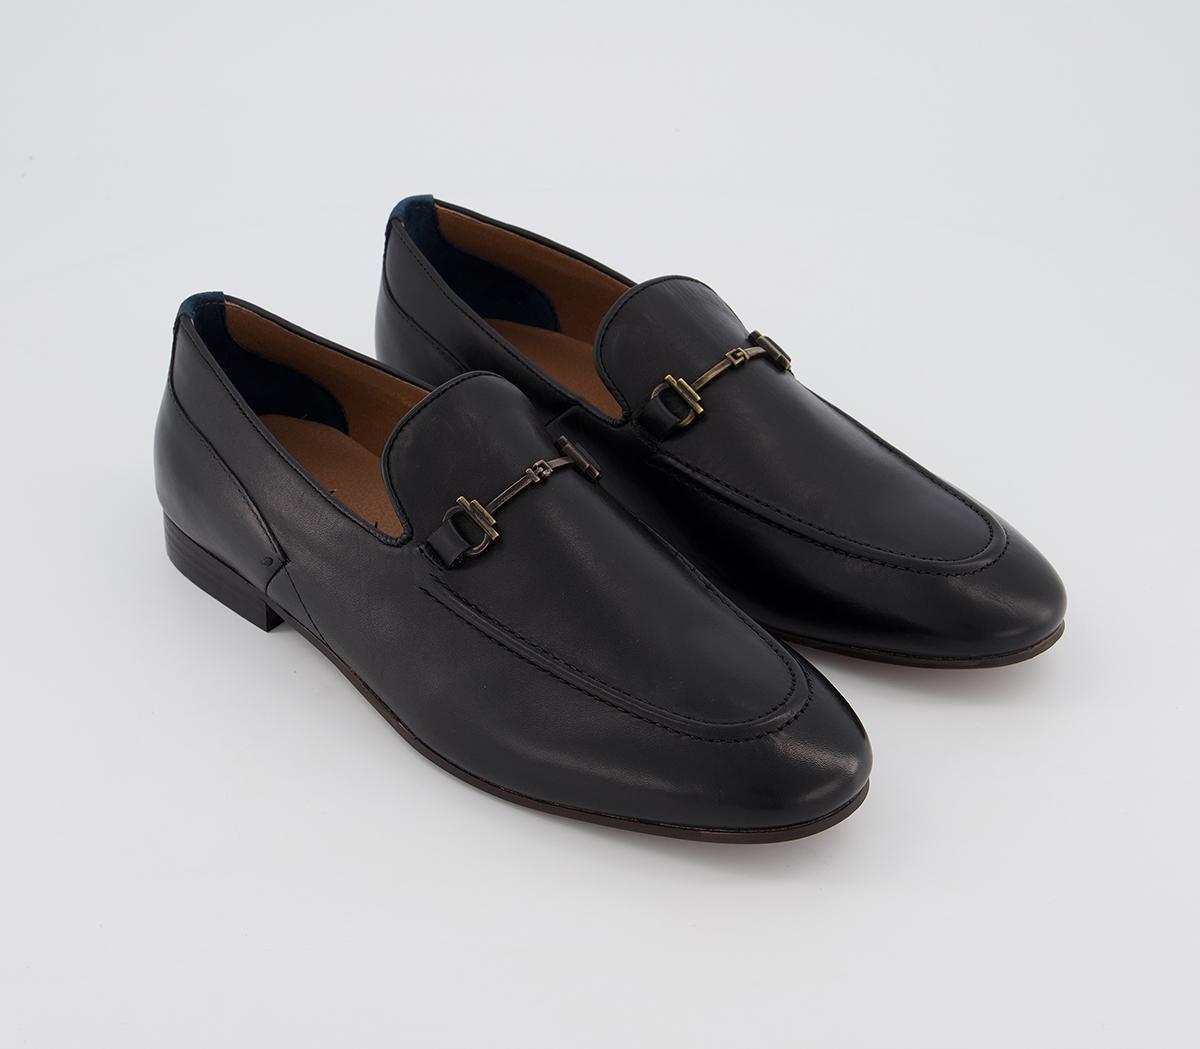 Hudson London Blythe Bar Loafer Black Calf - Men’s Smart Shoes